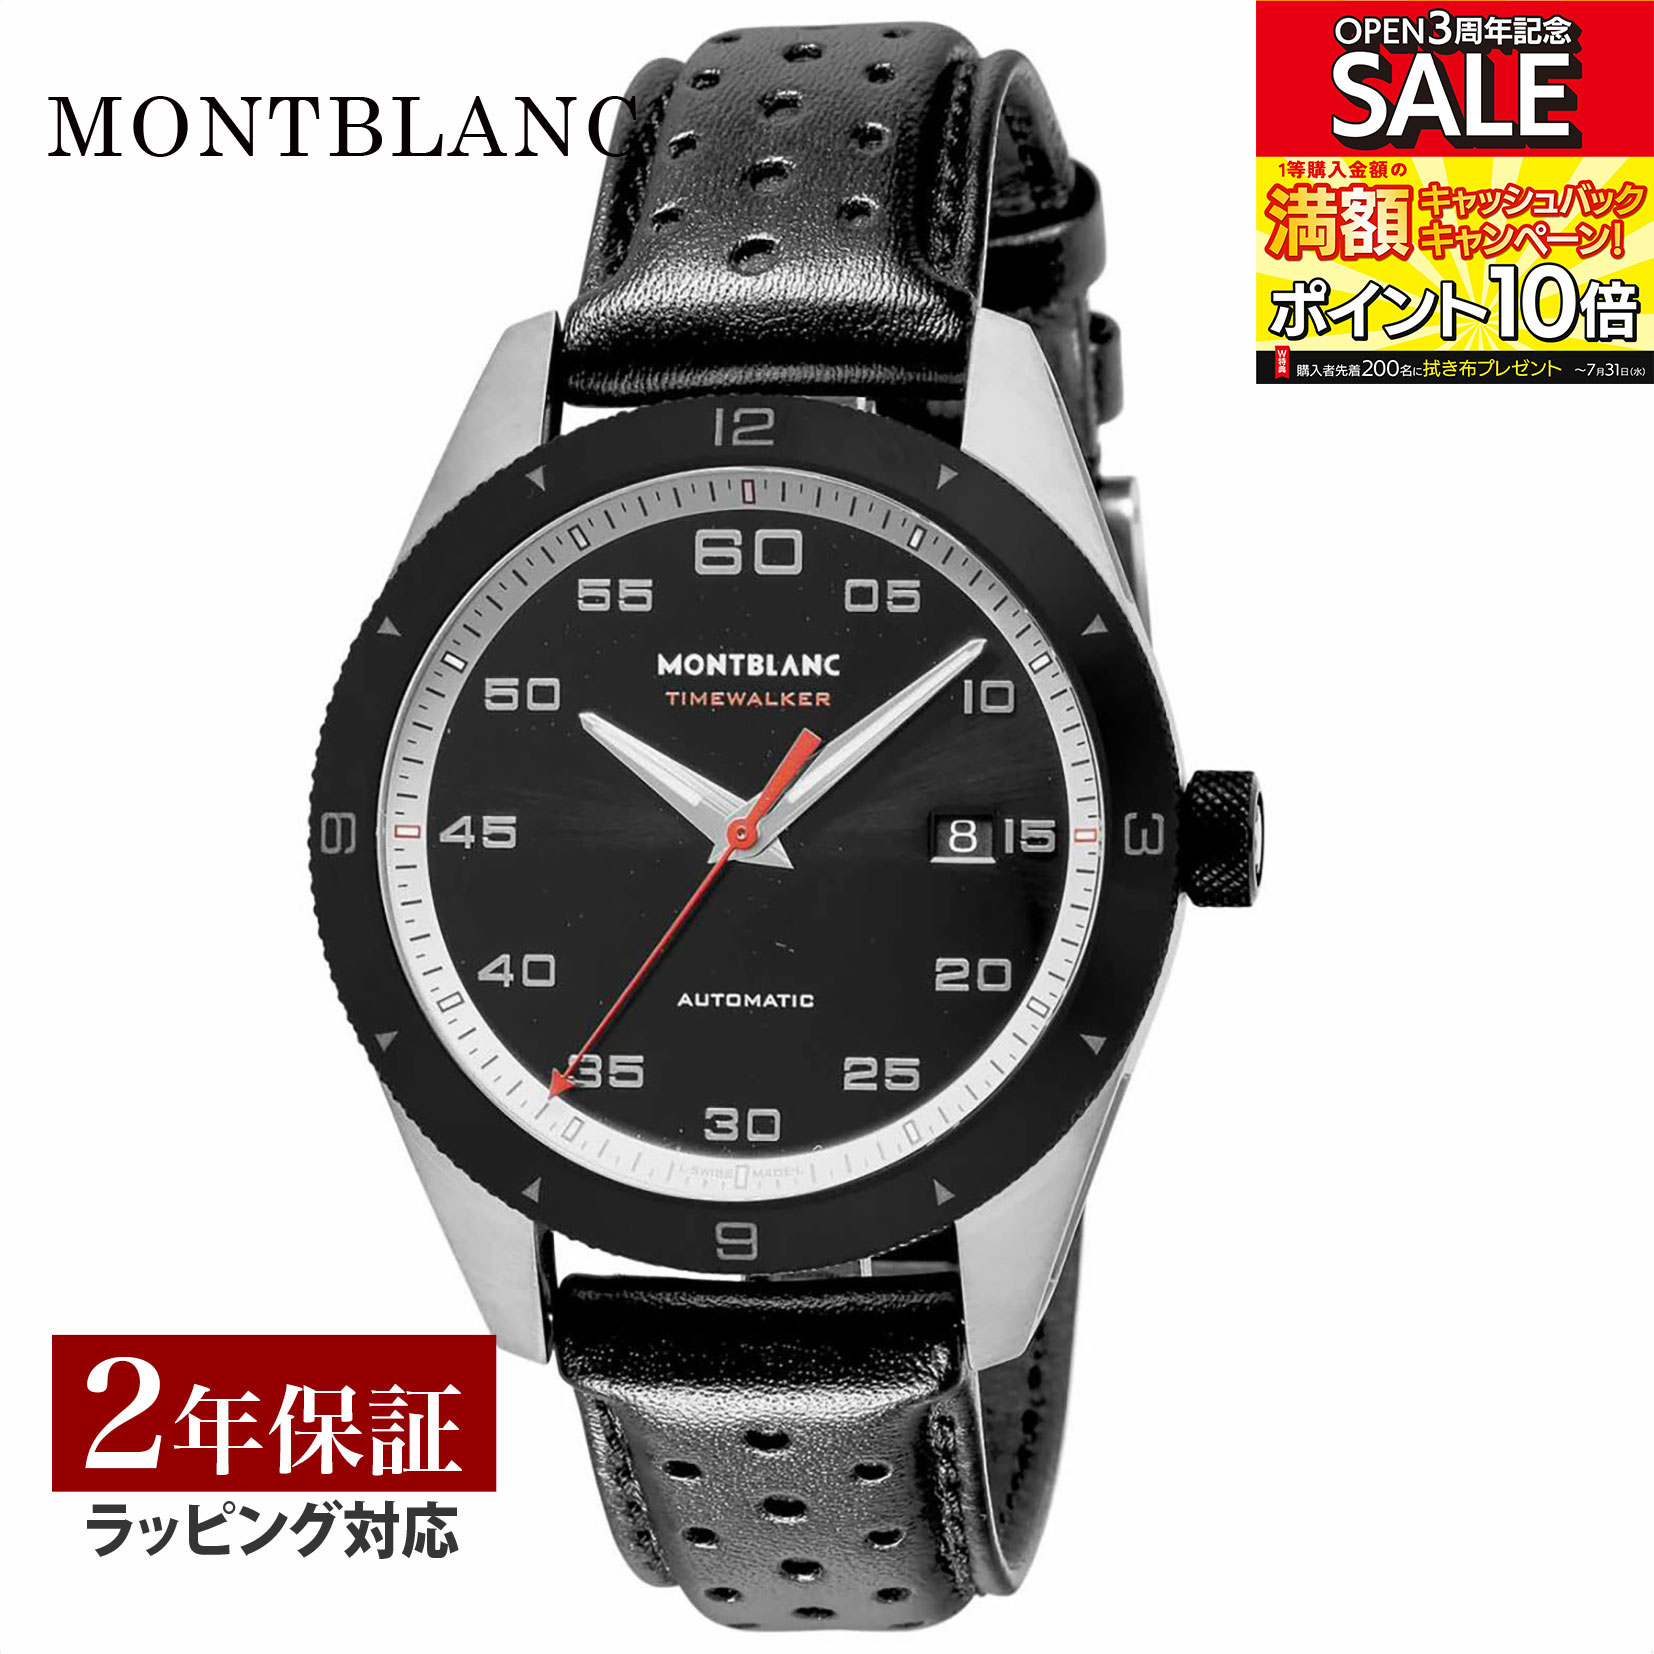 モンブラン ビジネス腕時計 メンズ モンブラン Montblanc メンズ 時計 TIME WALKER タイムウォーカー 自動巻 ブラック 116061 時計 腕時計 高級腕時計 ブランド 【ローン金利無料】